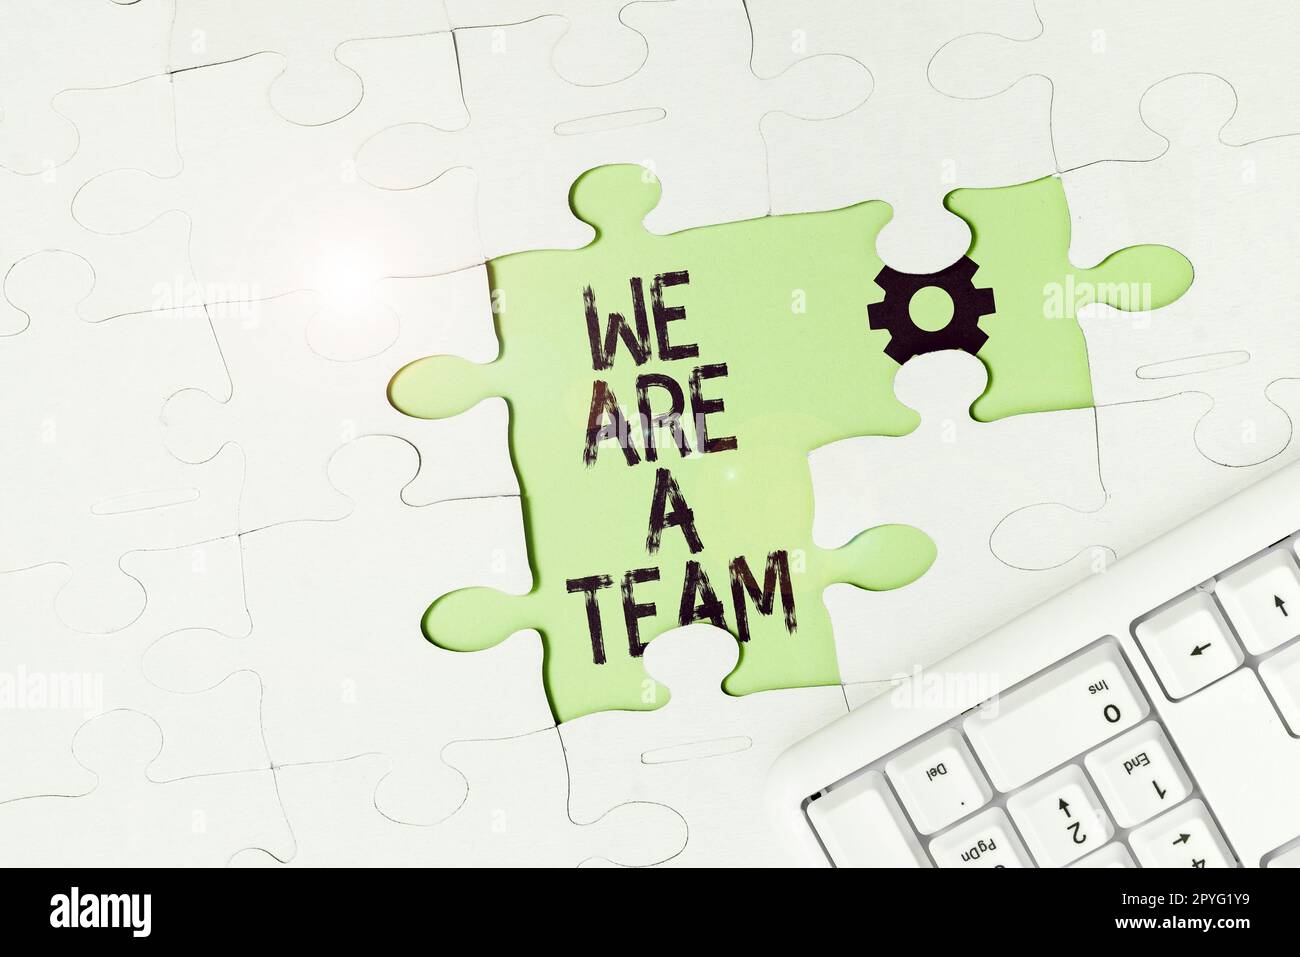 Konzeptionelle Darstellung Wir sind Ein Team. Wort für Zusammenarbeit, um eine gemeinsame Vision oder gemeinsame Ziele zu erreichen Stockfoto